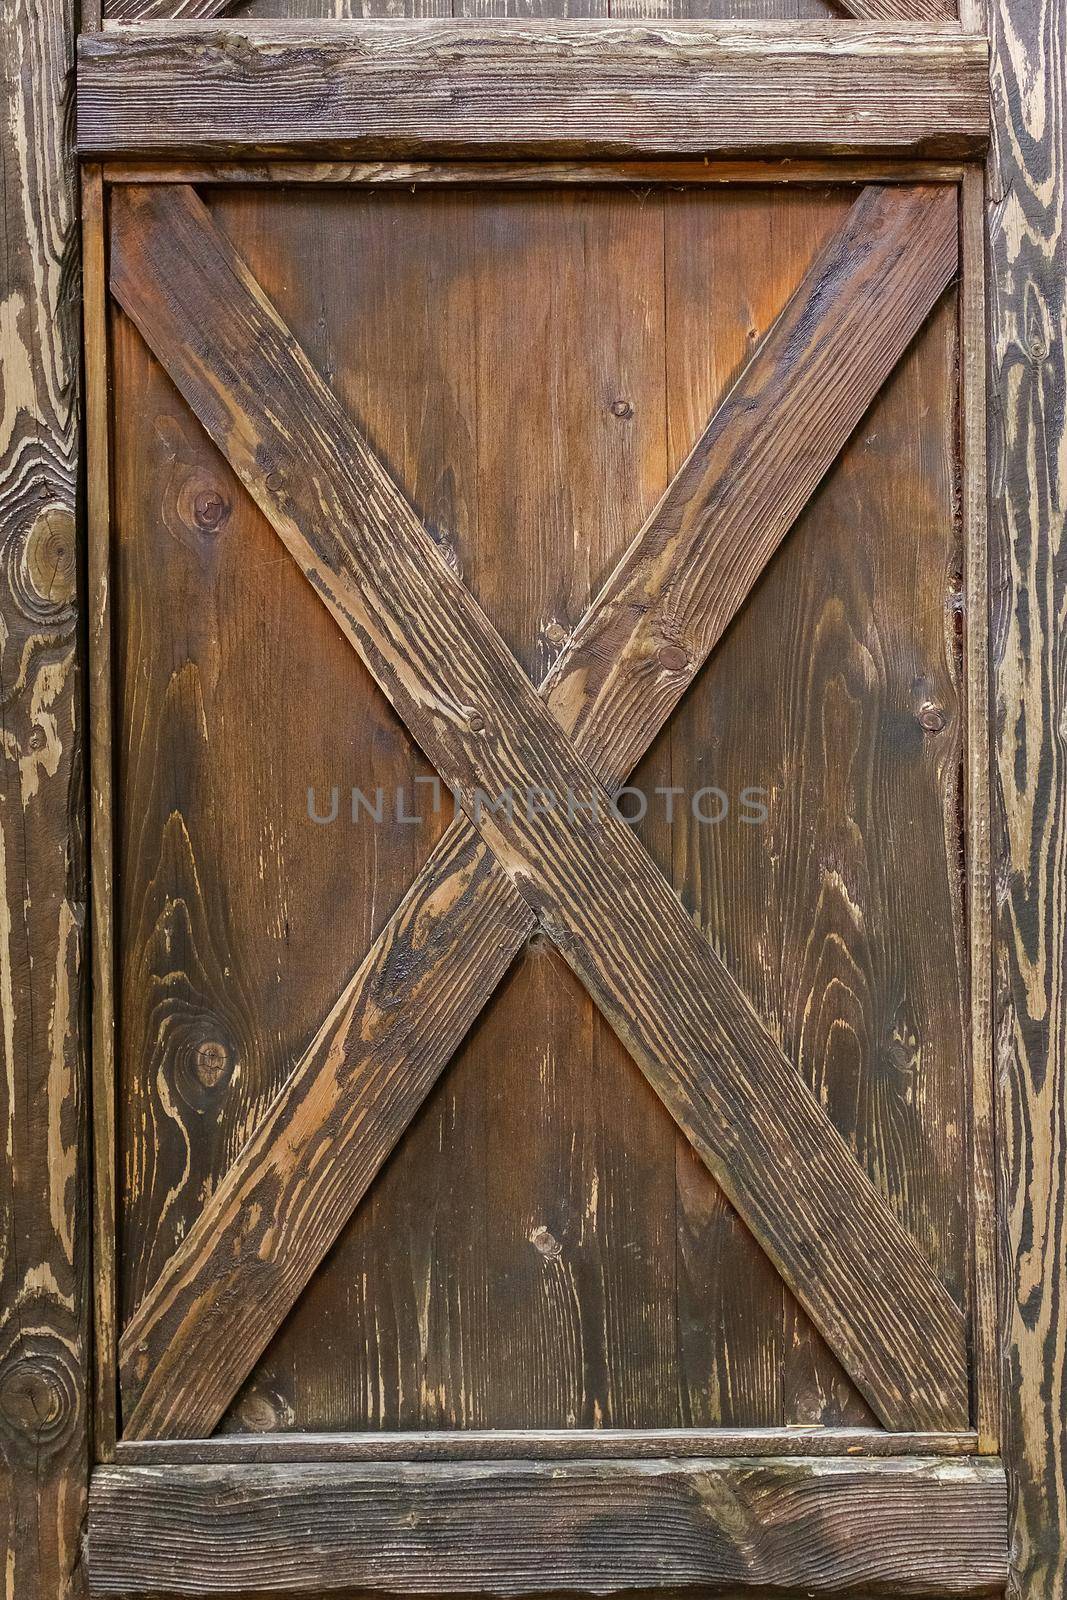 Wooden door lock, vintage wooden door, Brown wooden door, texture, background